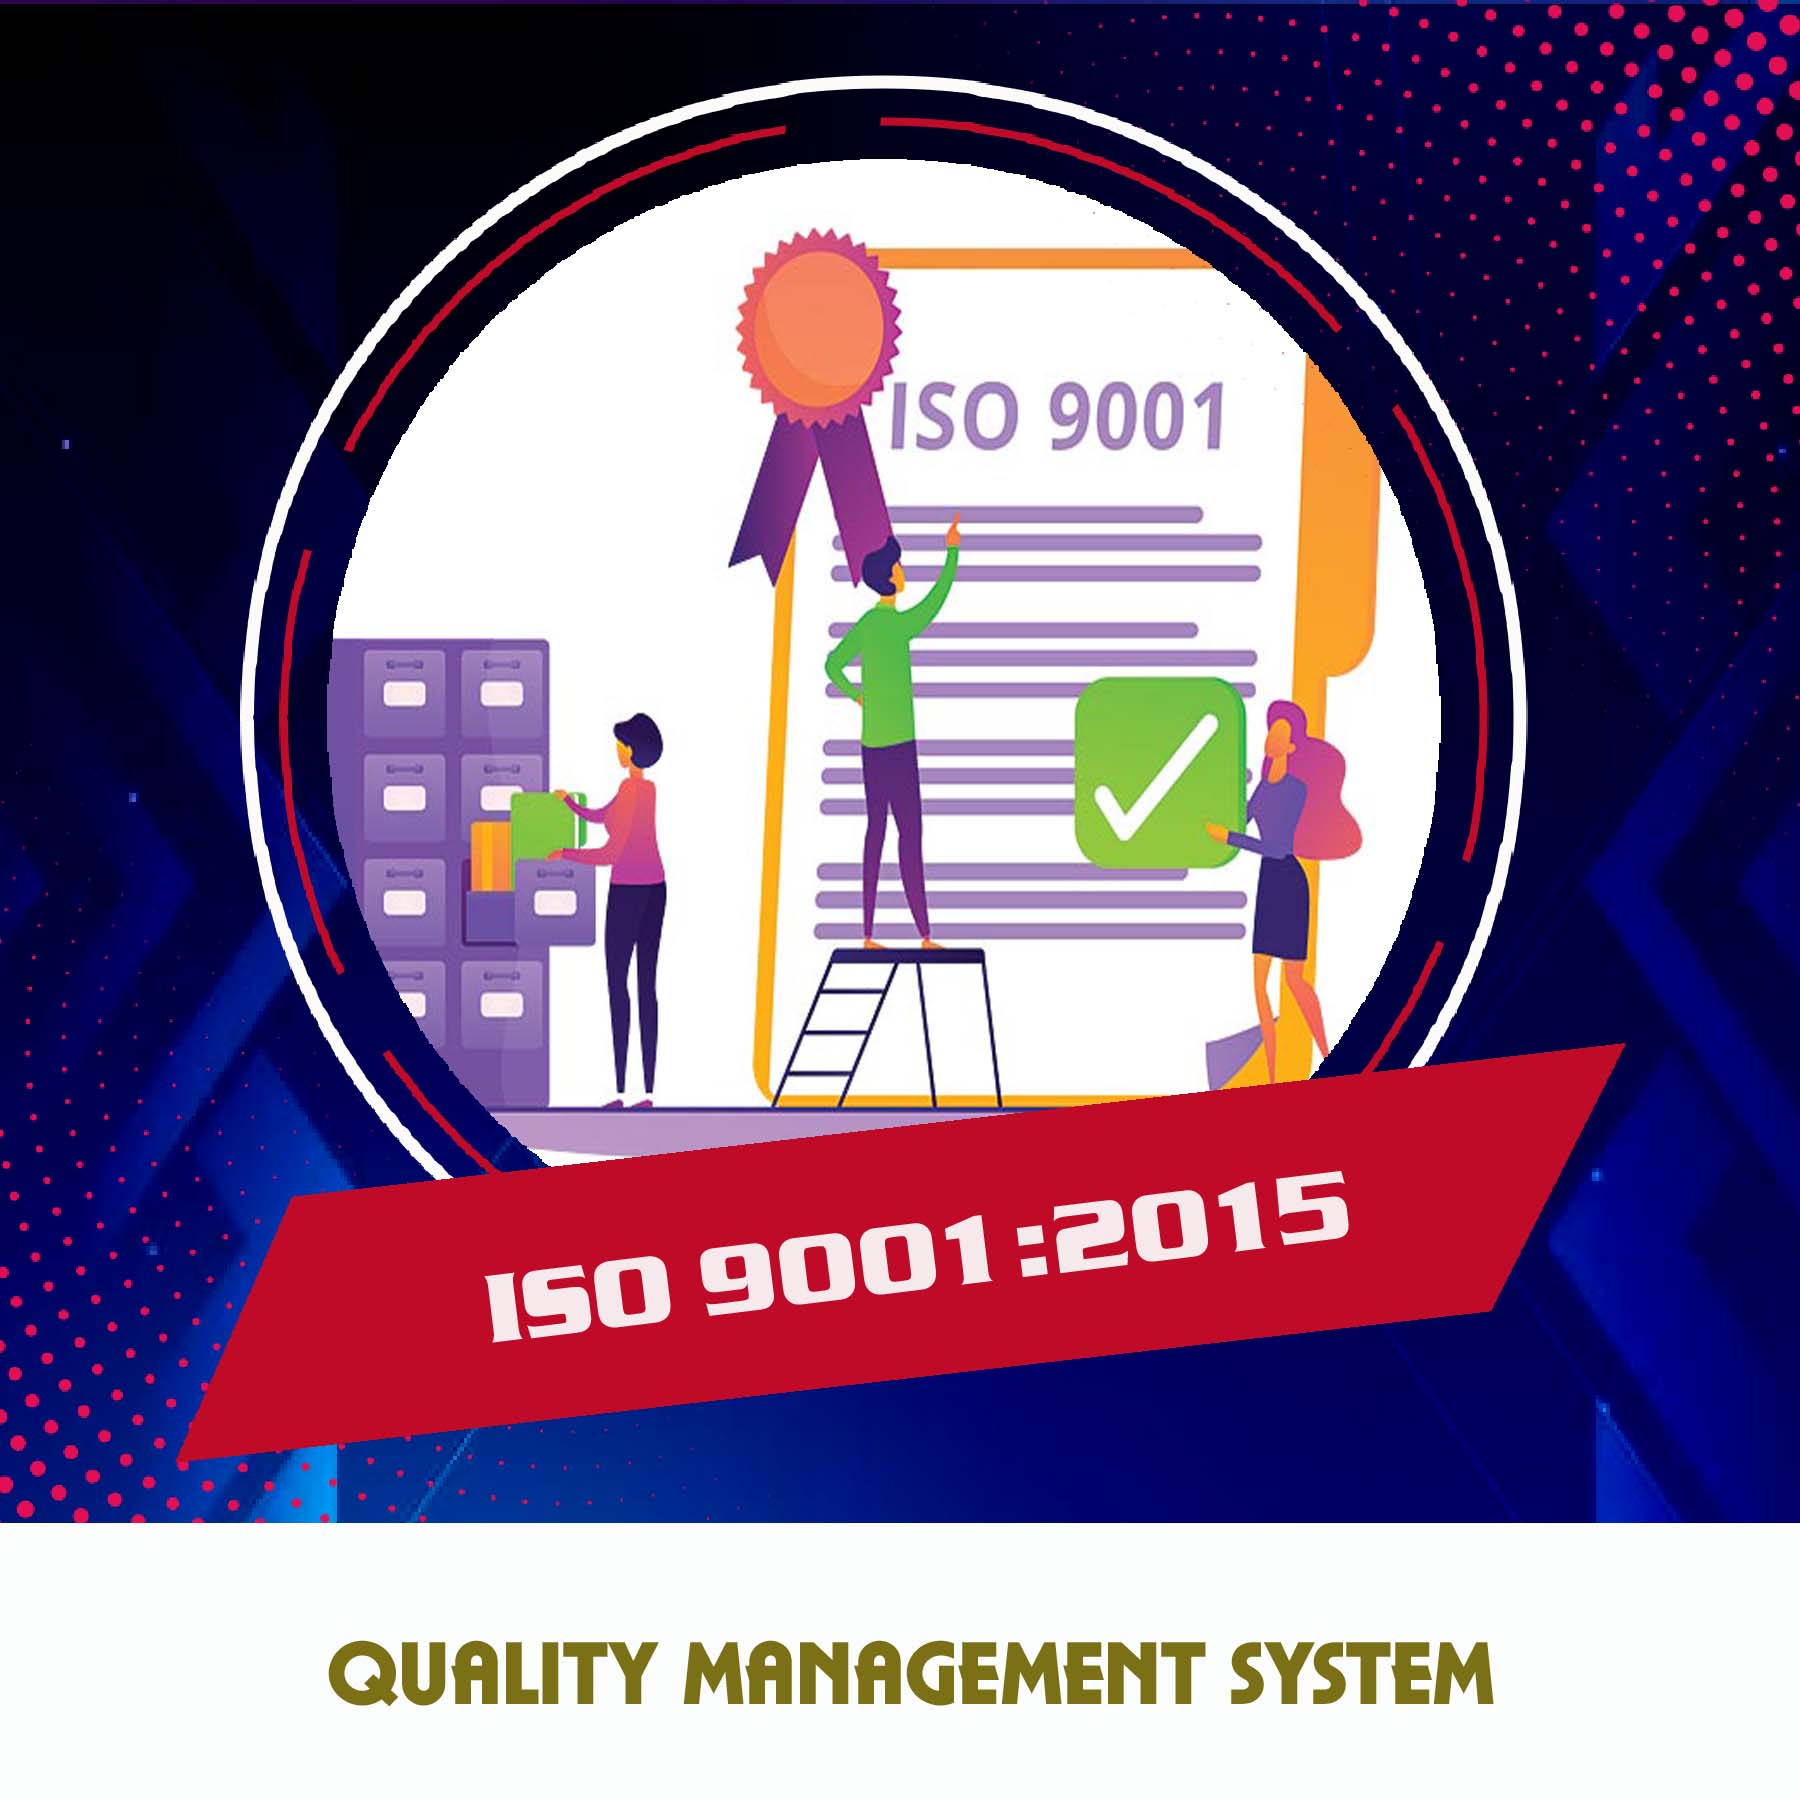 NEEDS OF ISO 9001:2015